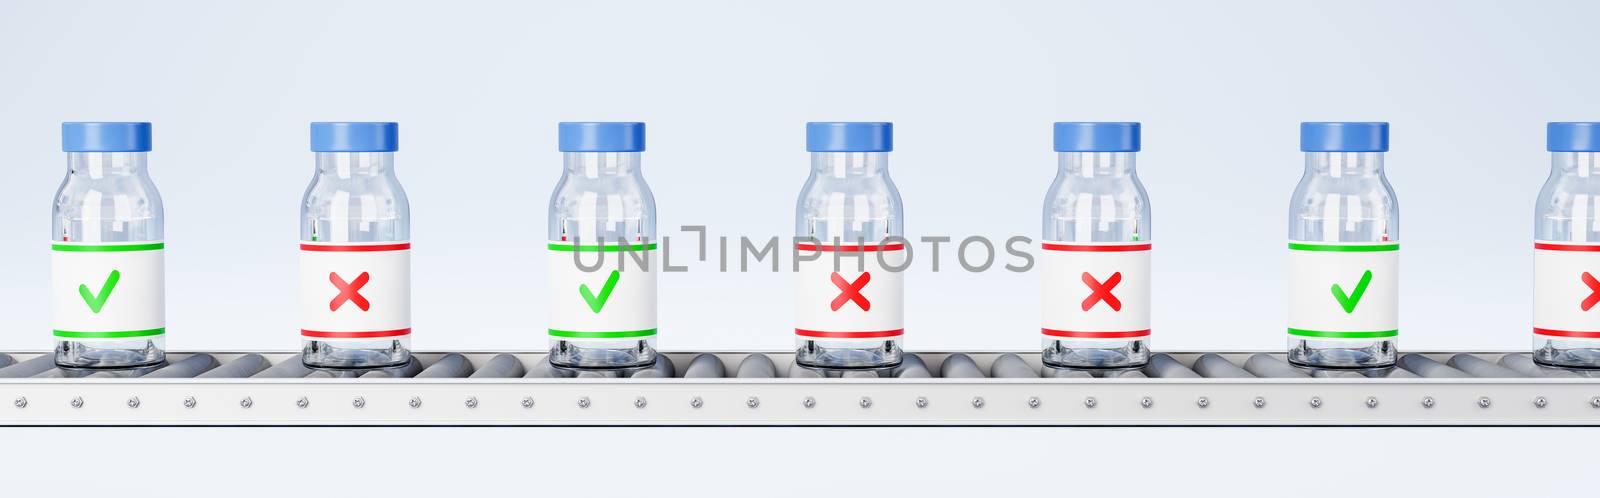 Medicine Bottles on Conveyor Belt Roller on Light Blue Background 3D Render Illustration, Quality Check Concept